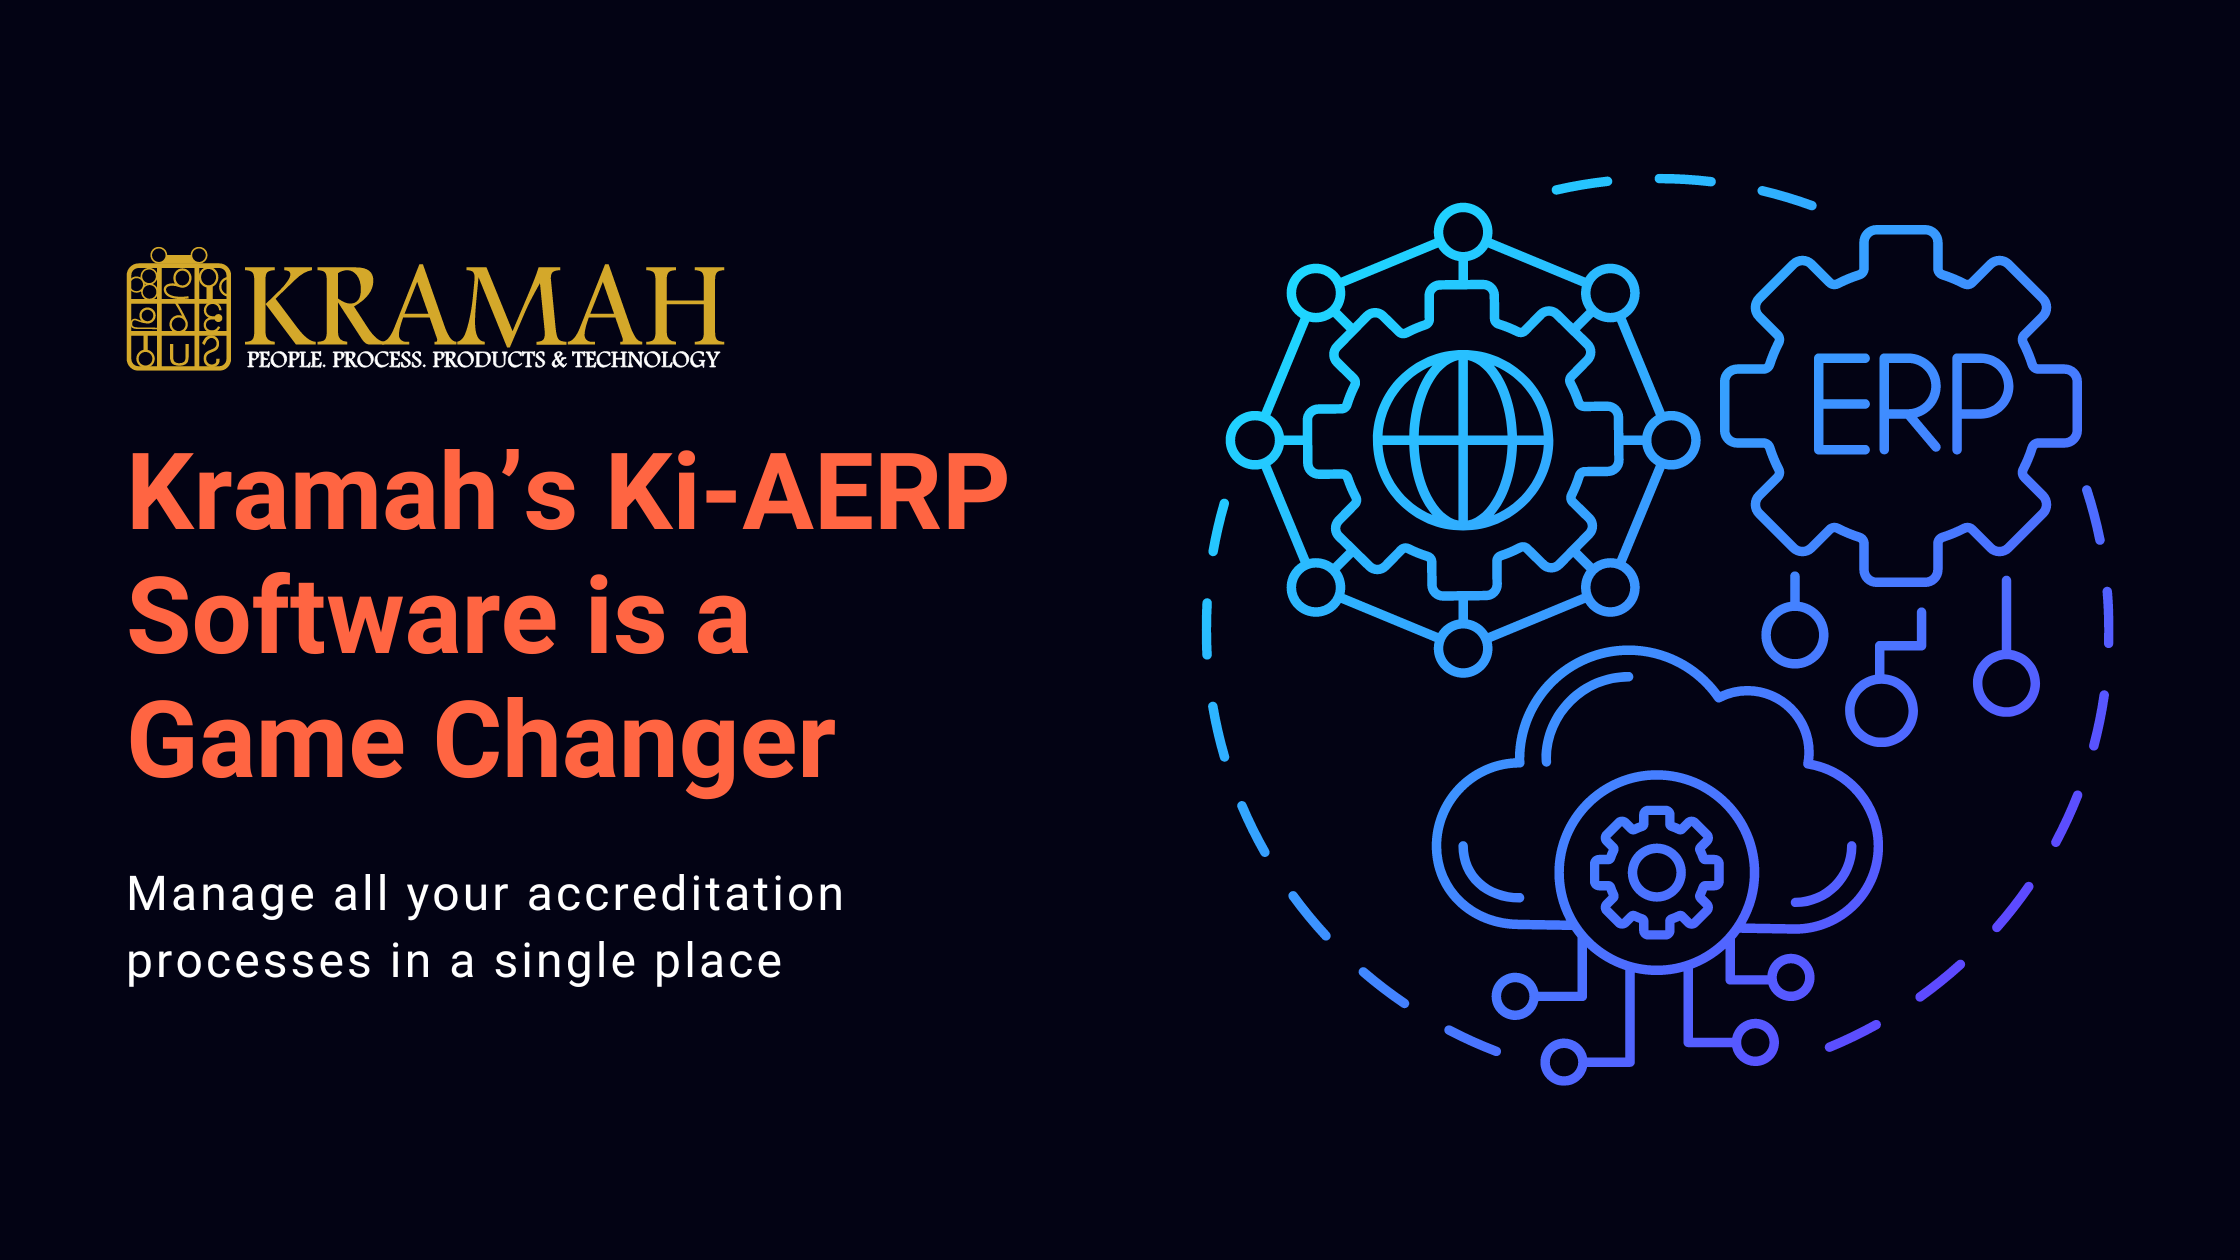 Kramah's Ki-AERP is a game changer Blog Banner